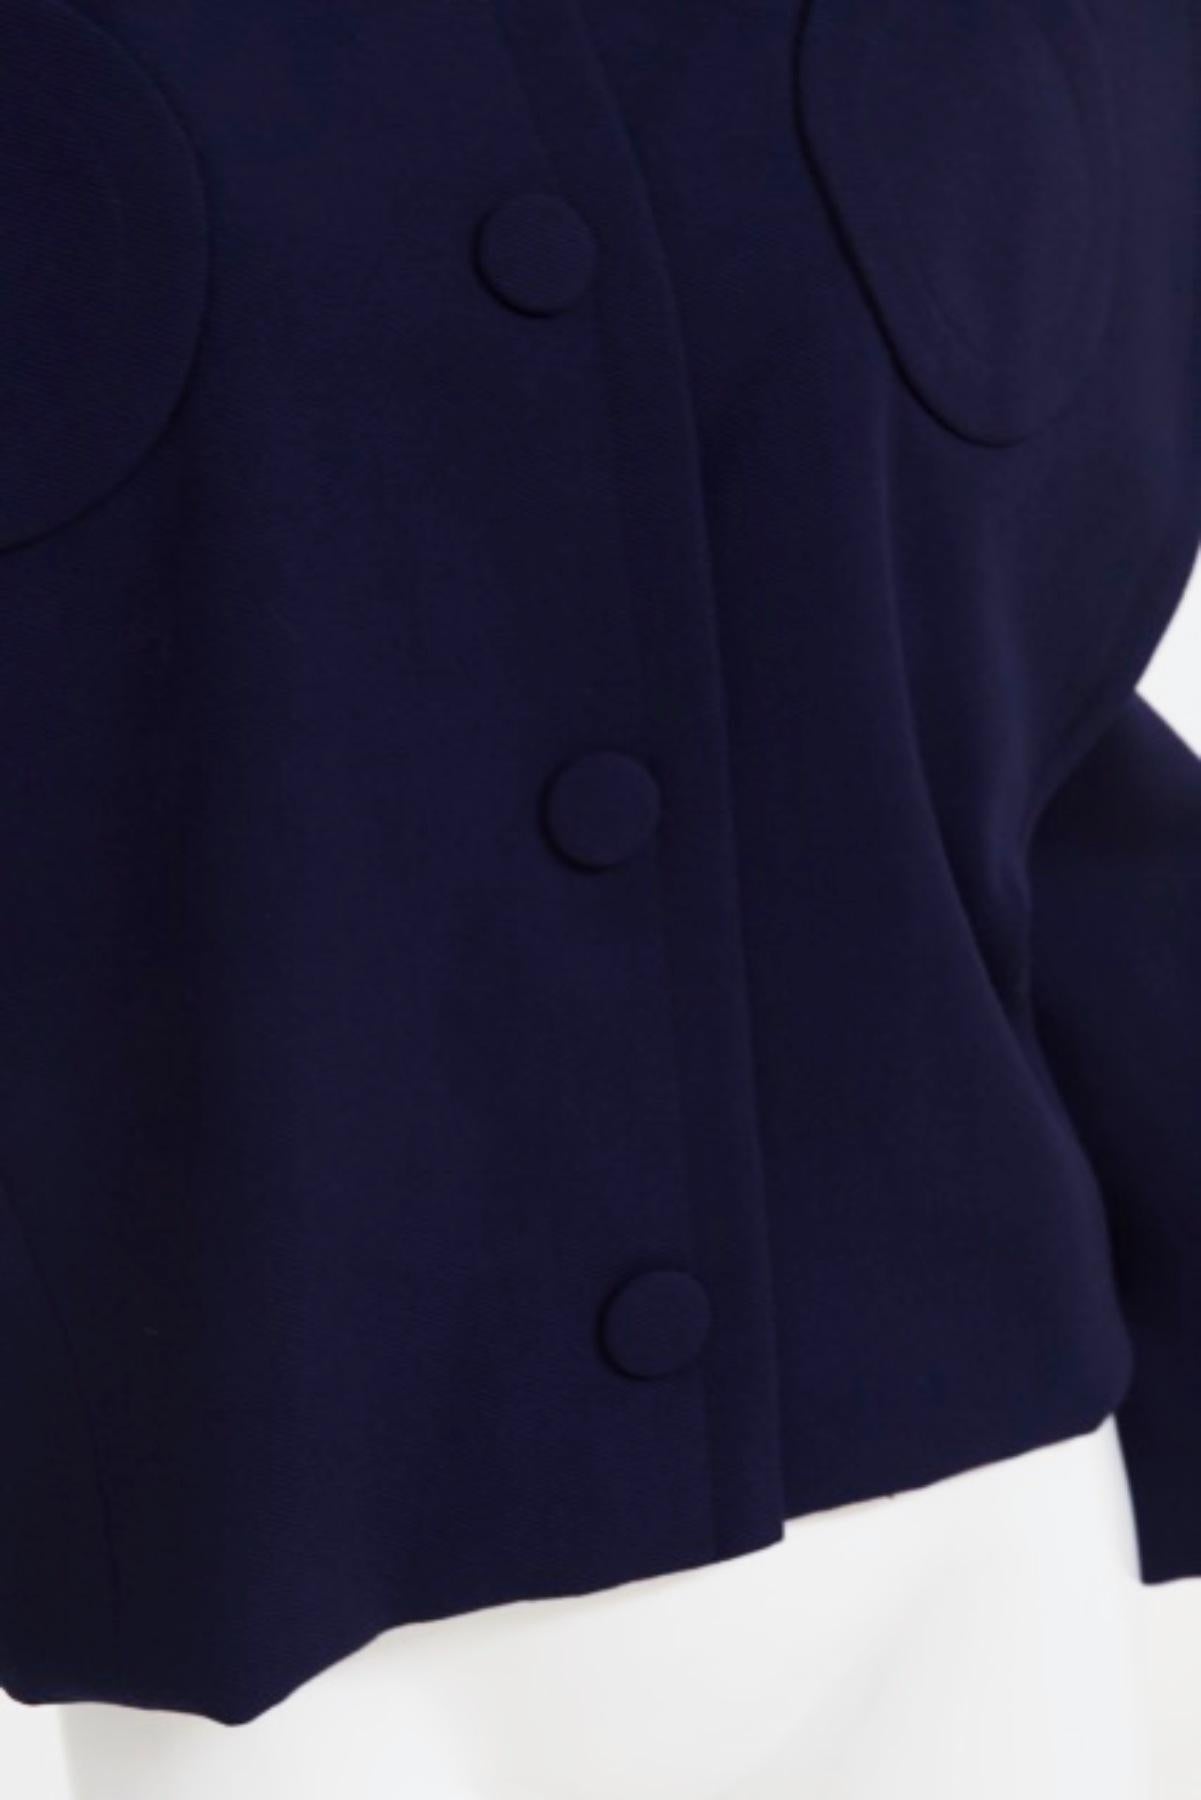 Pierre Cardin Vintage Blue Cotton Blazer For Sale 3